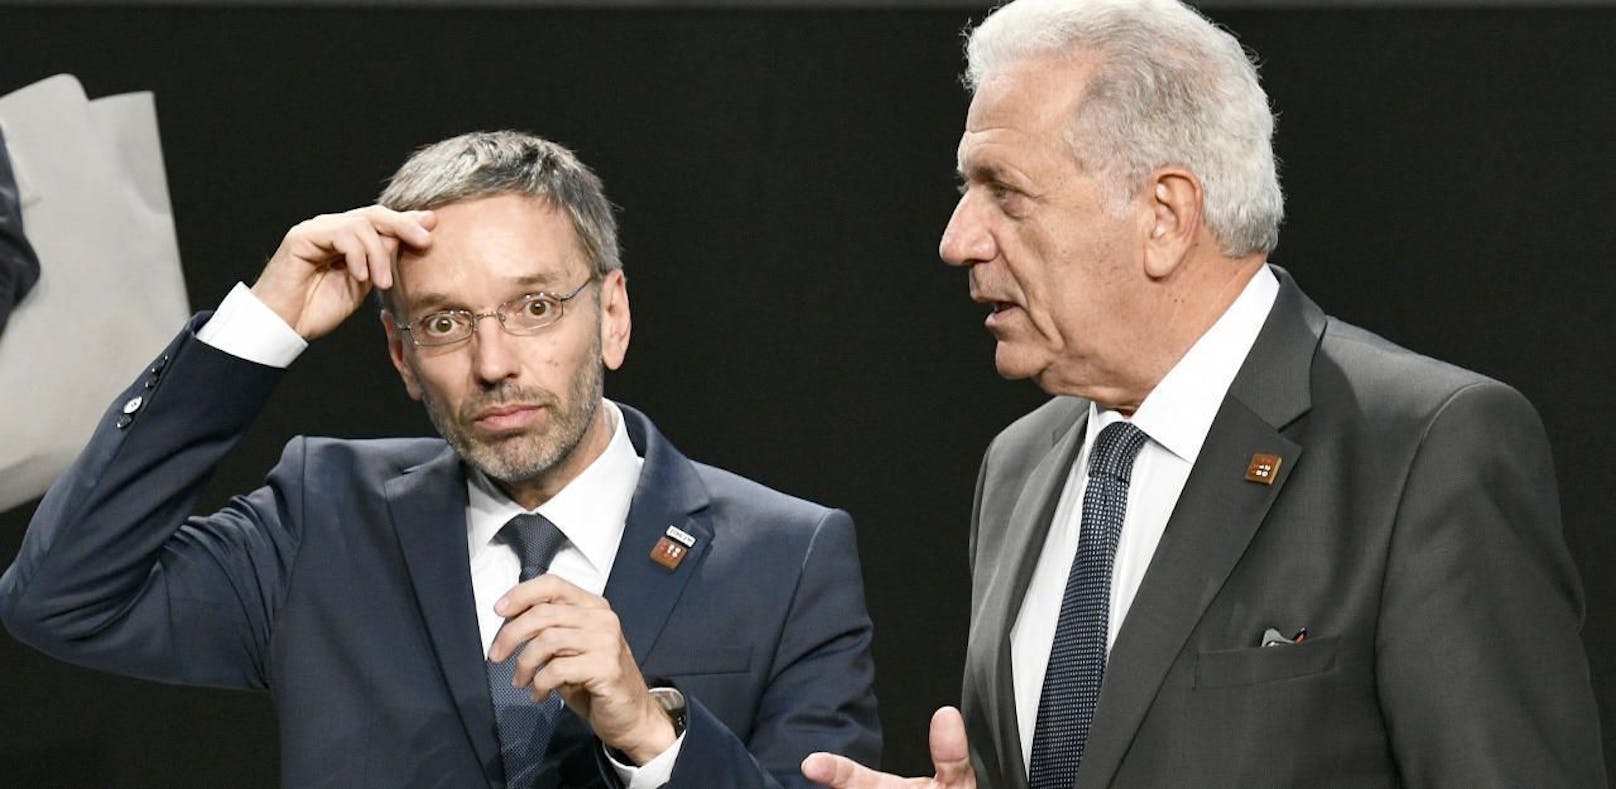 Innenminister Herbert Kickl (FPÖ) und EU-Kommissar Dimitris Avramopoulos.